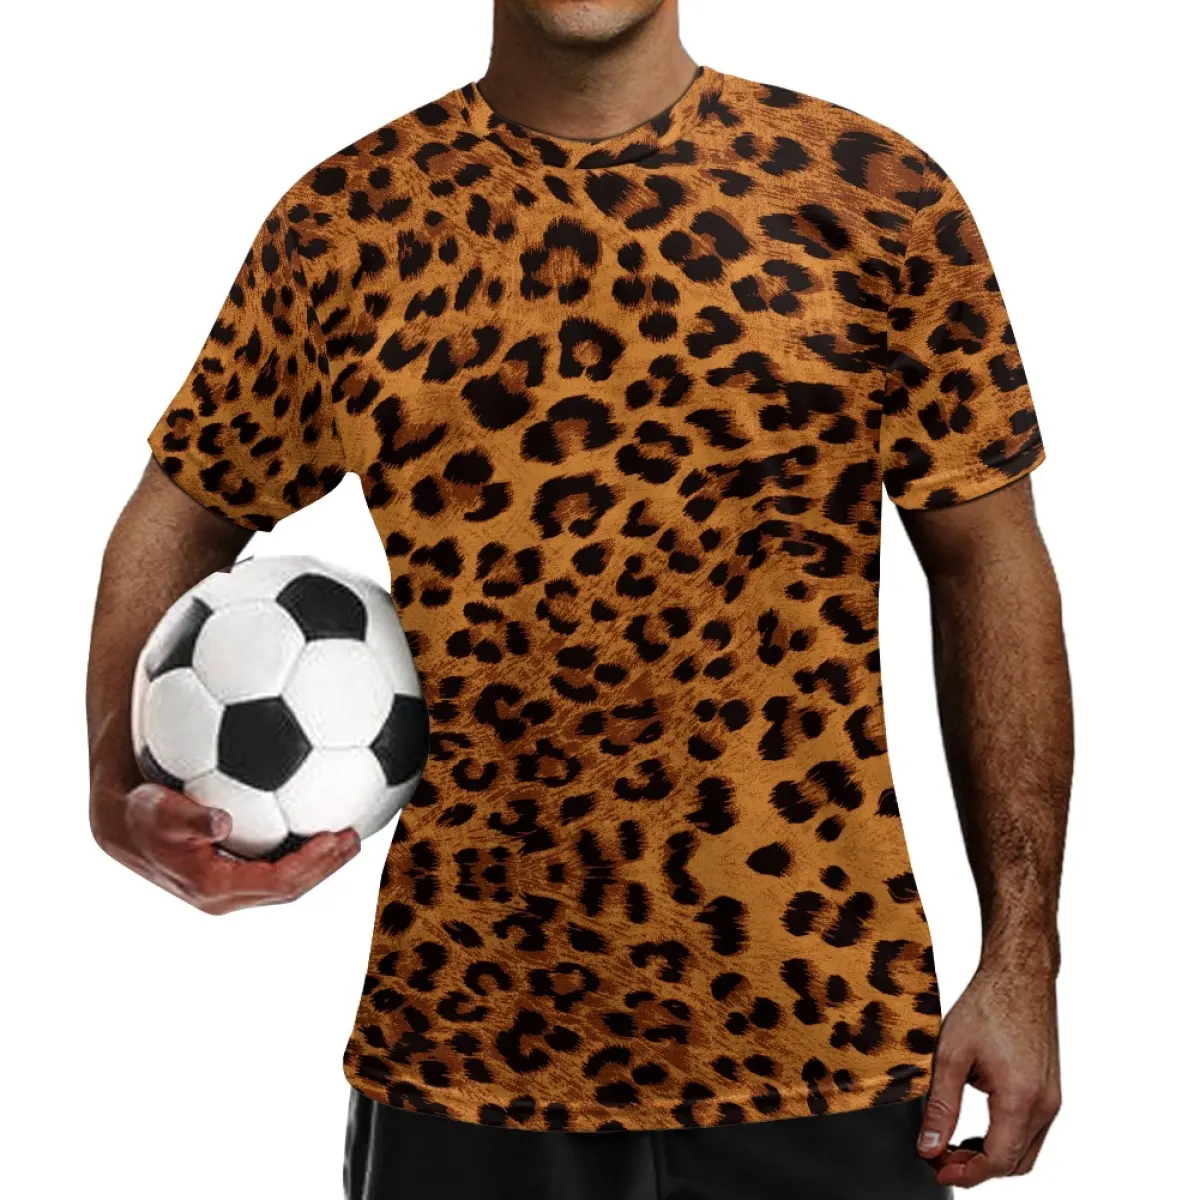 스포츠 축구 유니폼 다채로운 동물 질감 표범 인쇄 축구 유니폼 팀 짧은 소매 저렴한 축구 유니폼